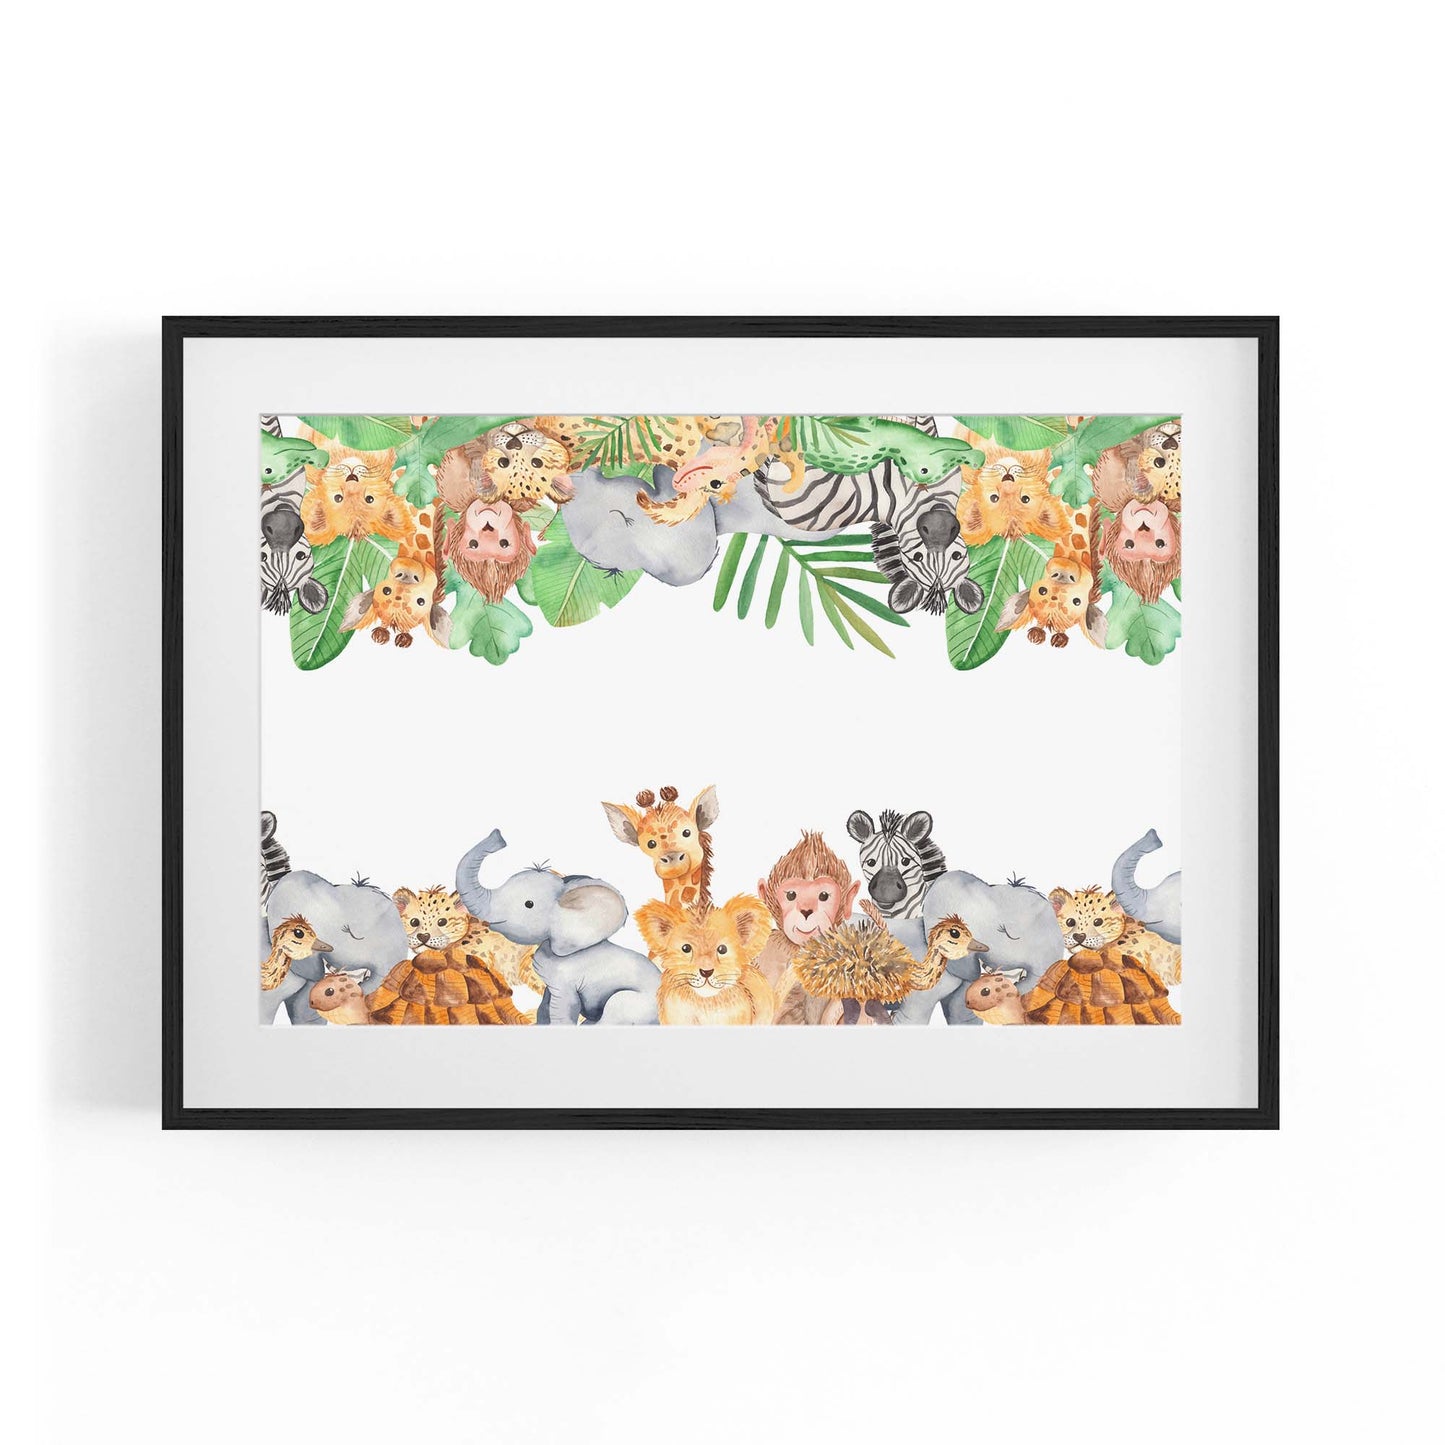 Safari Animal Group Painting Nursery Wall Art #1 - The Affordable Art Company